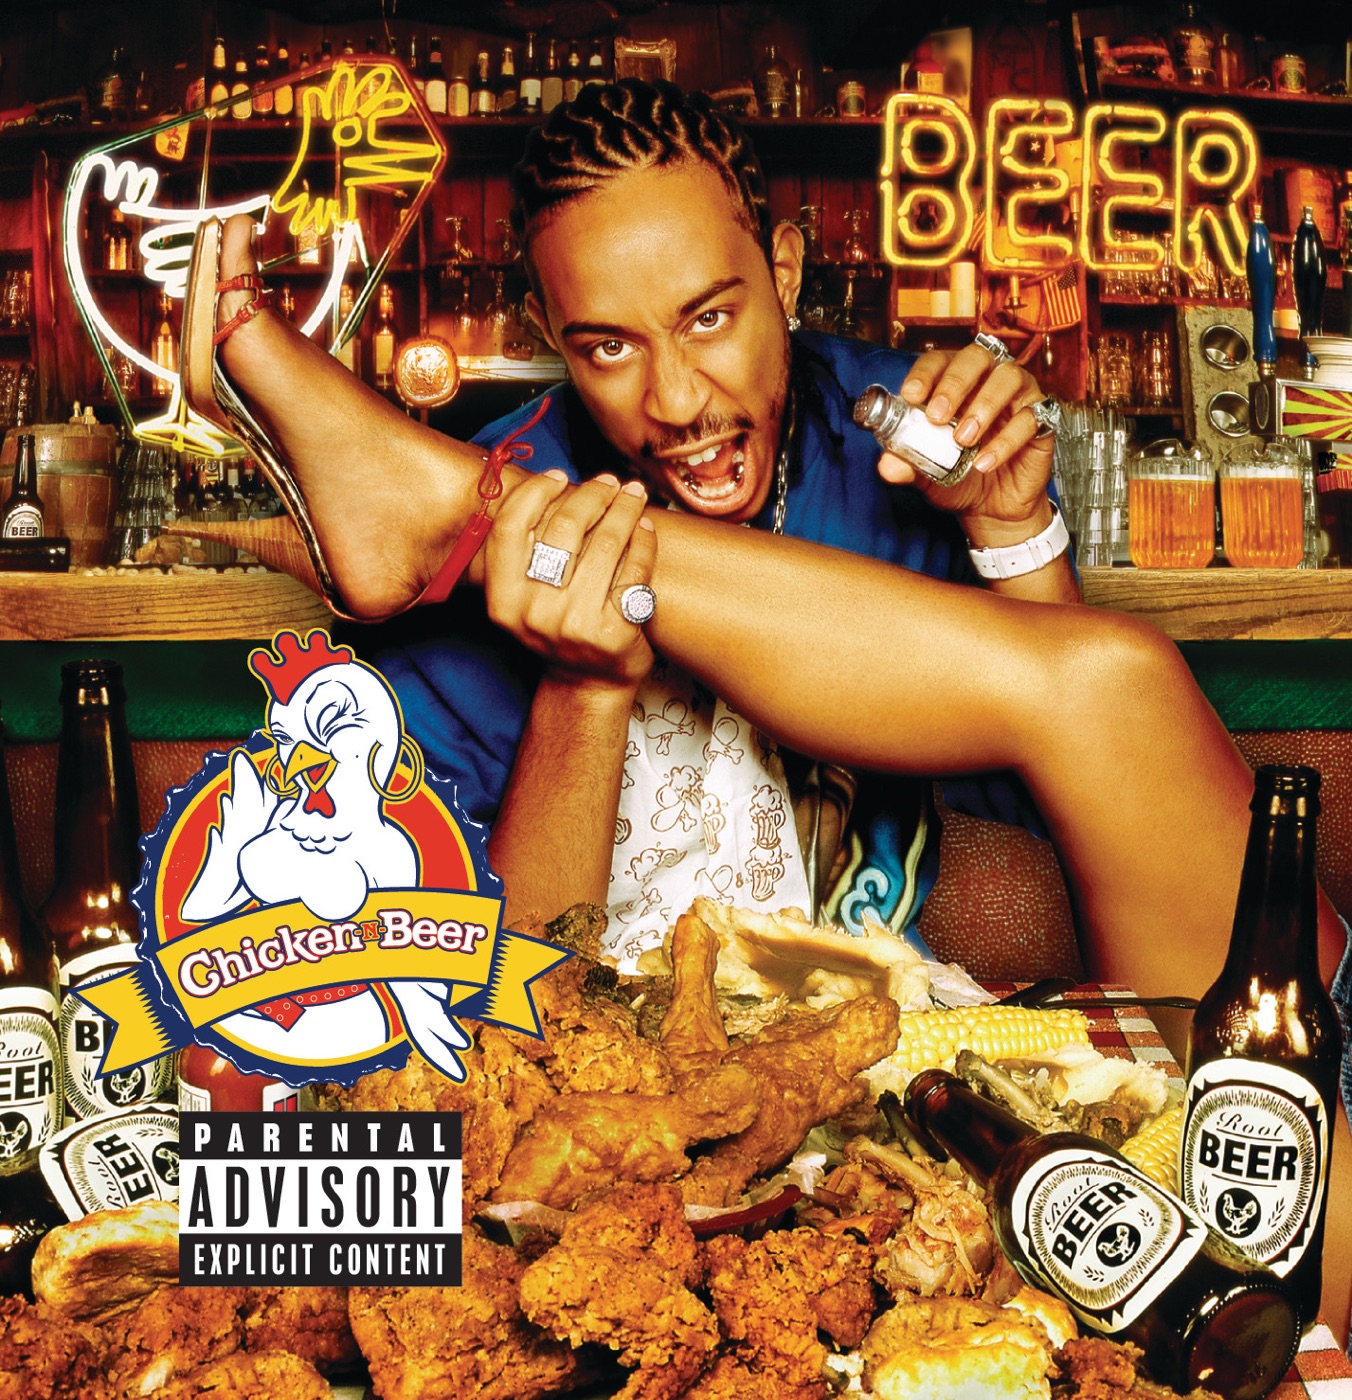 Chicken - N - Beer by Ludacris